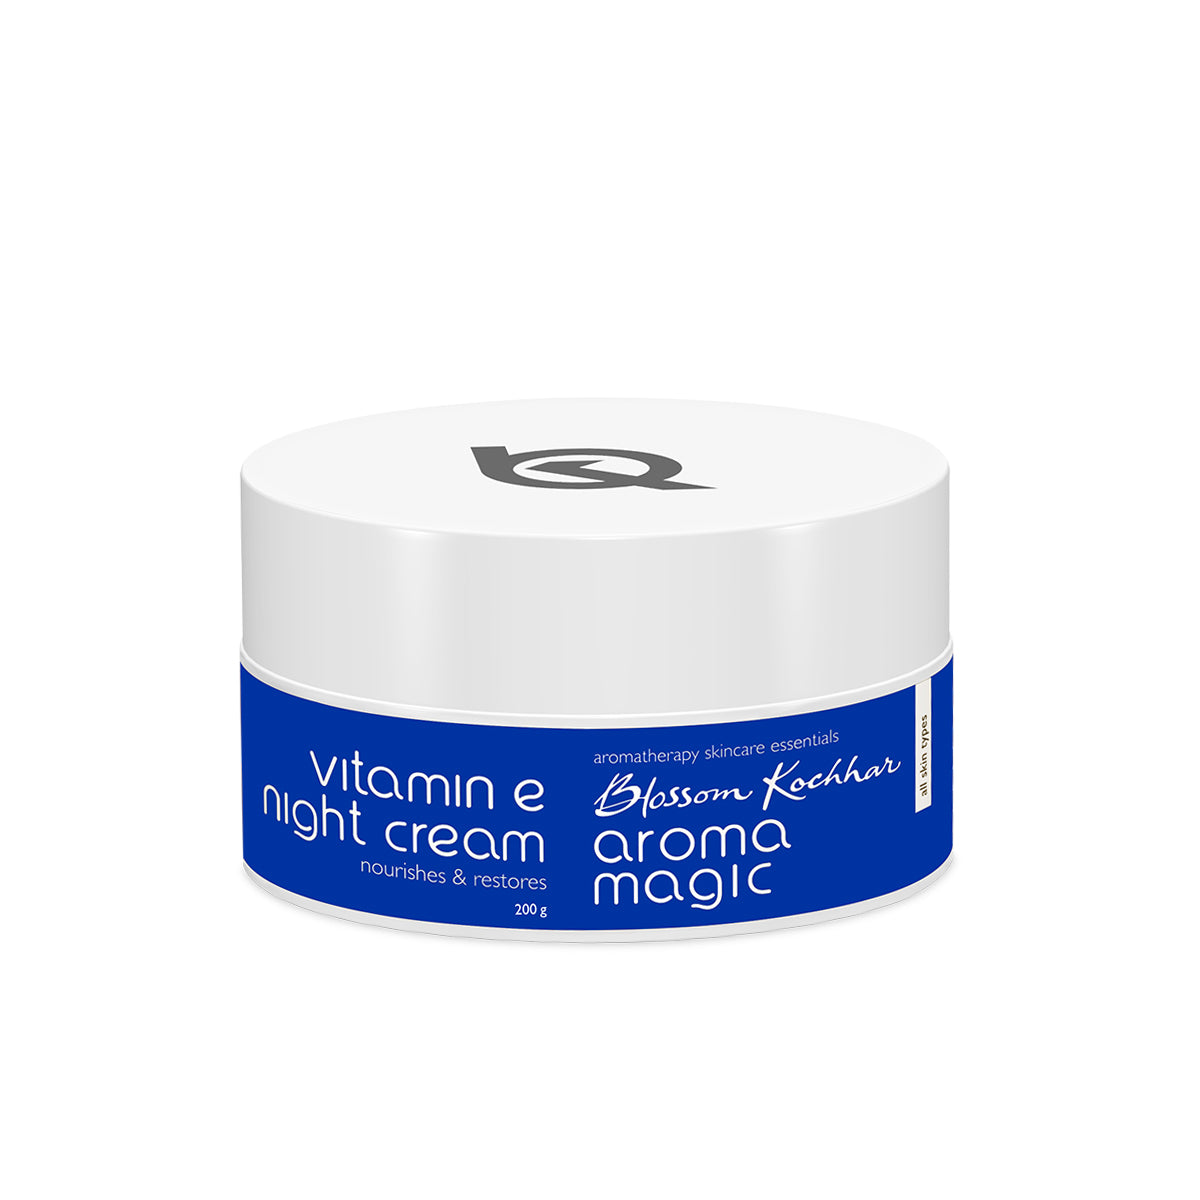 Vitamin E Night Cream - Aroma Magic